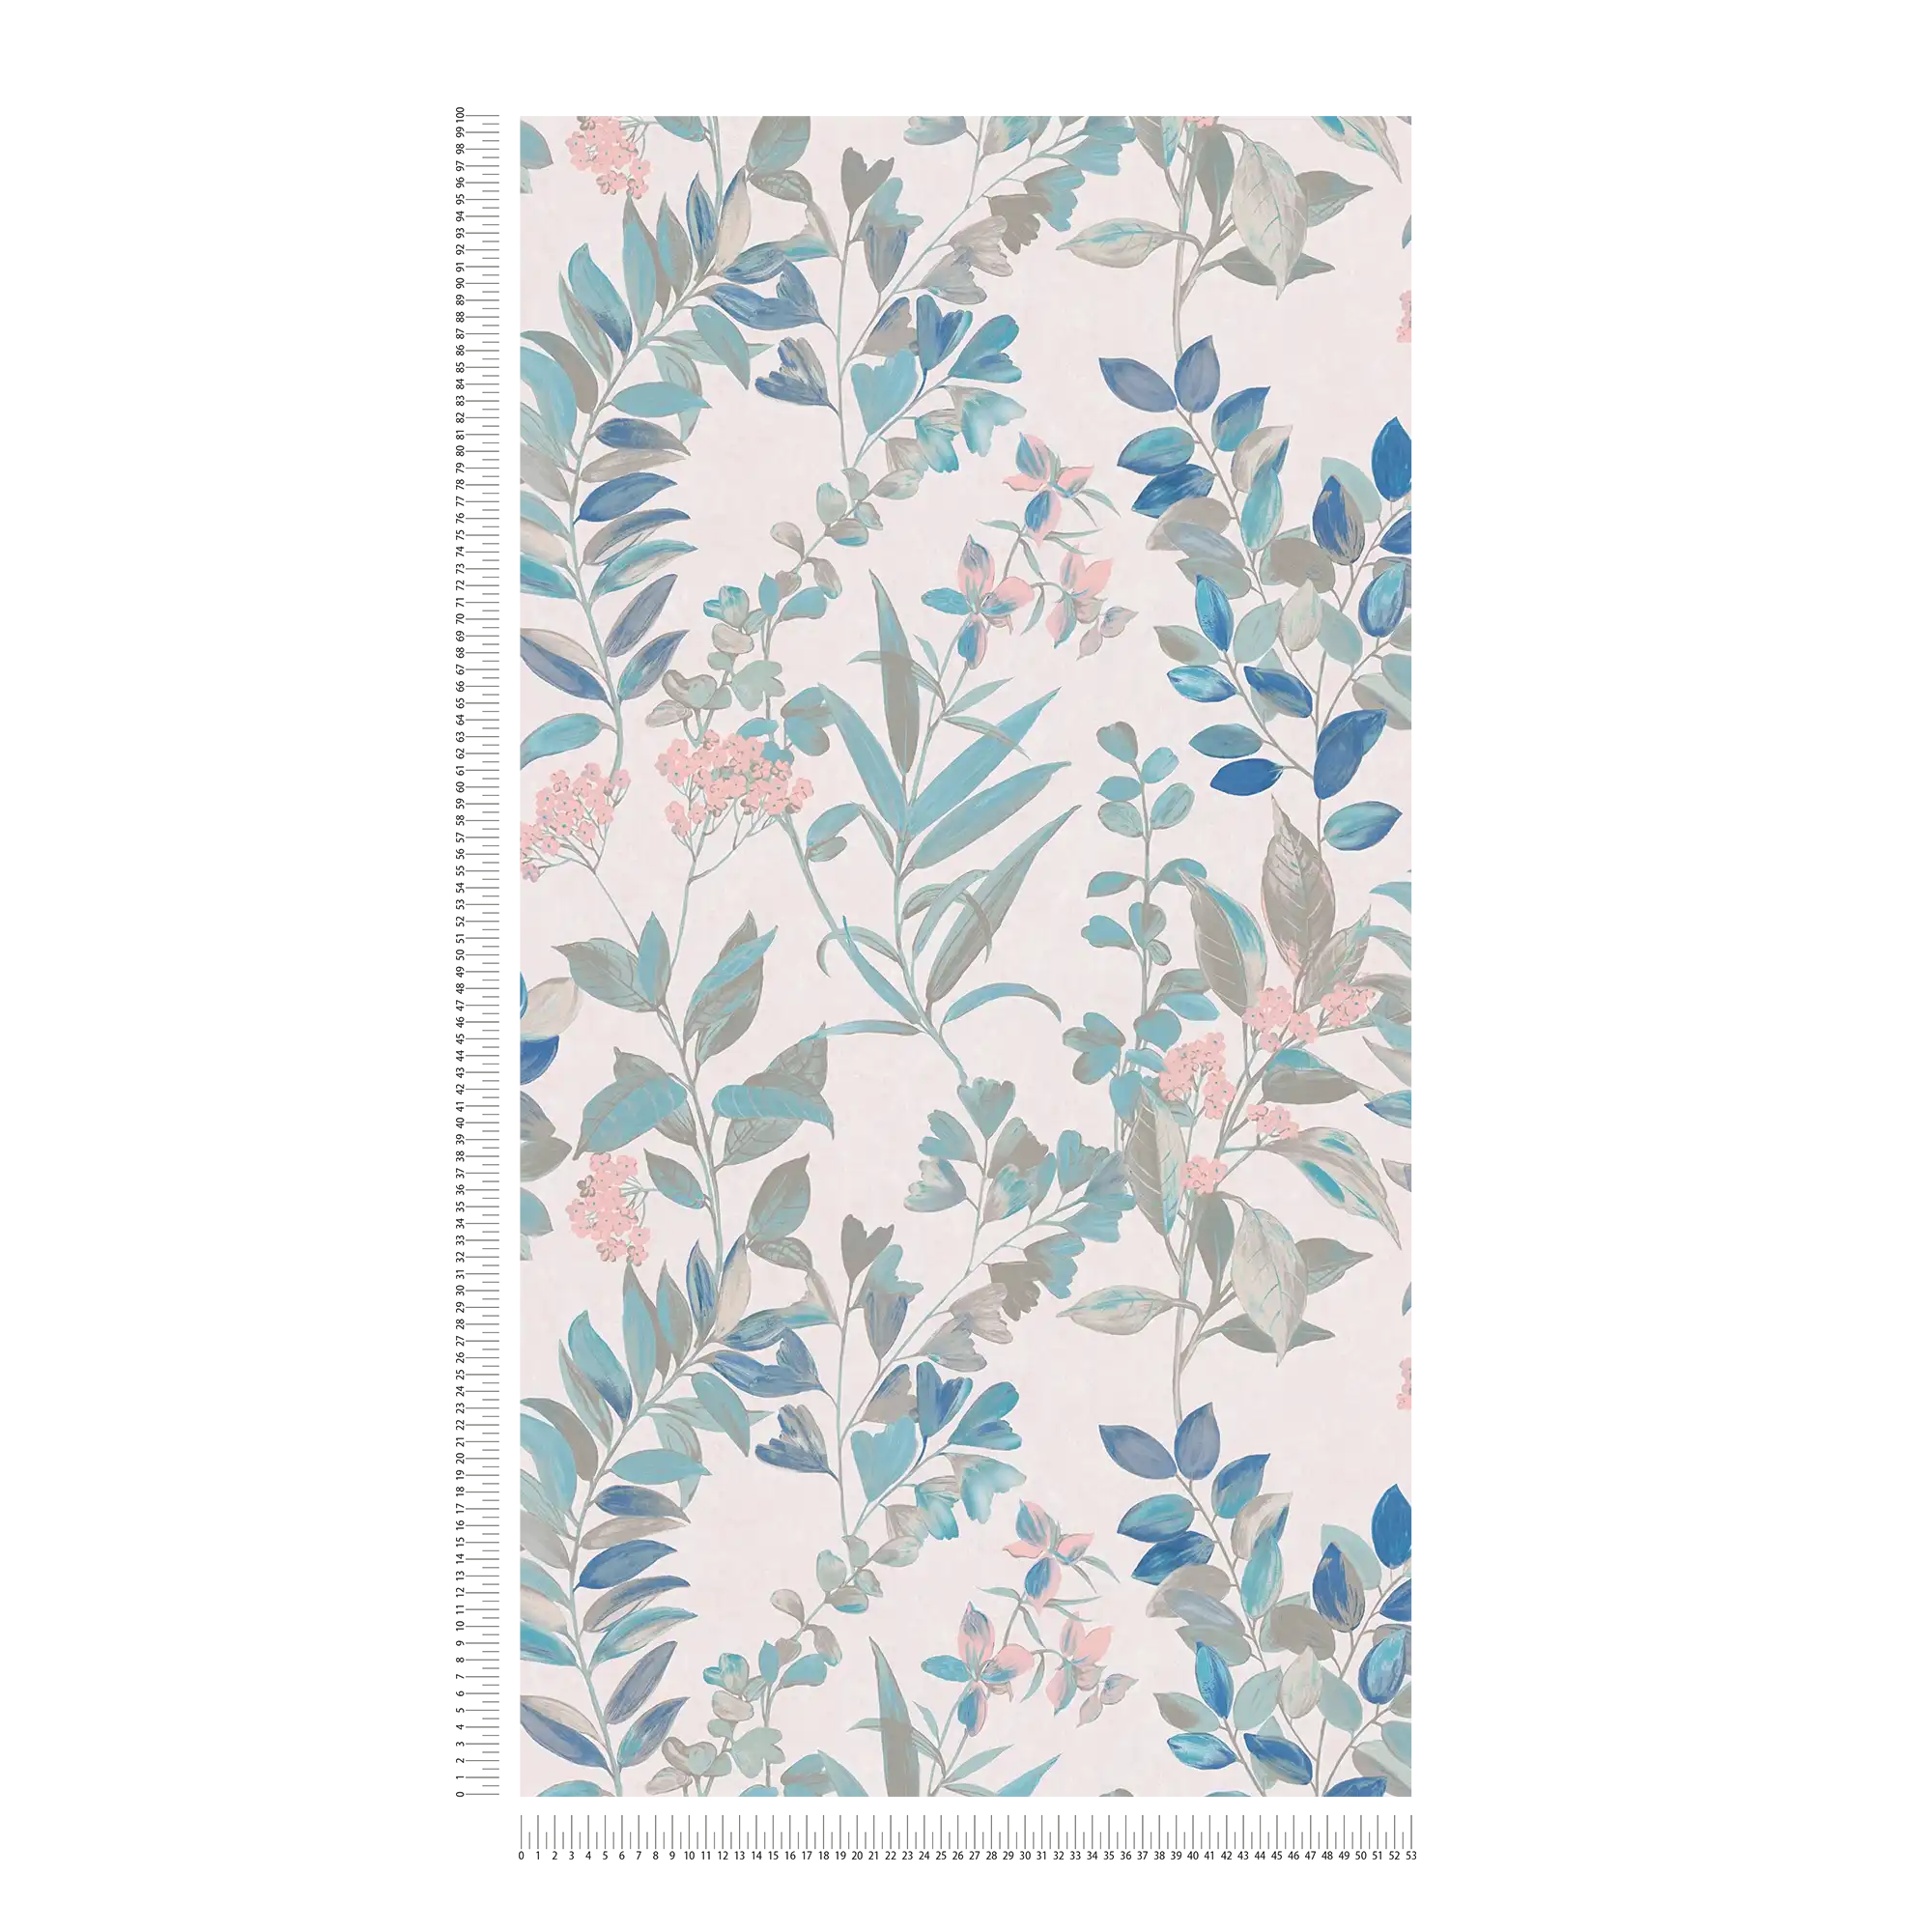             Blumentapete mit floralem Muster – Bunt, Weiß, Türkis
        